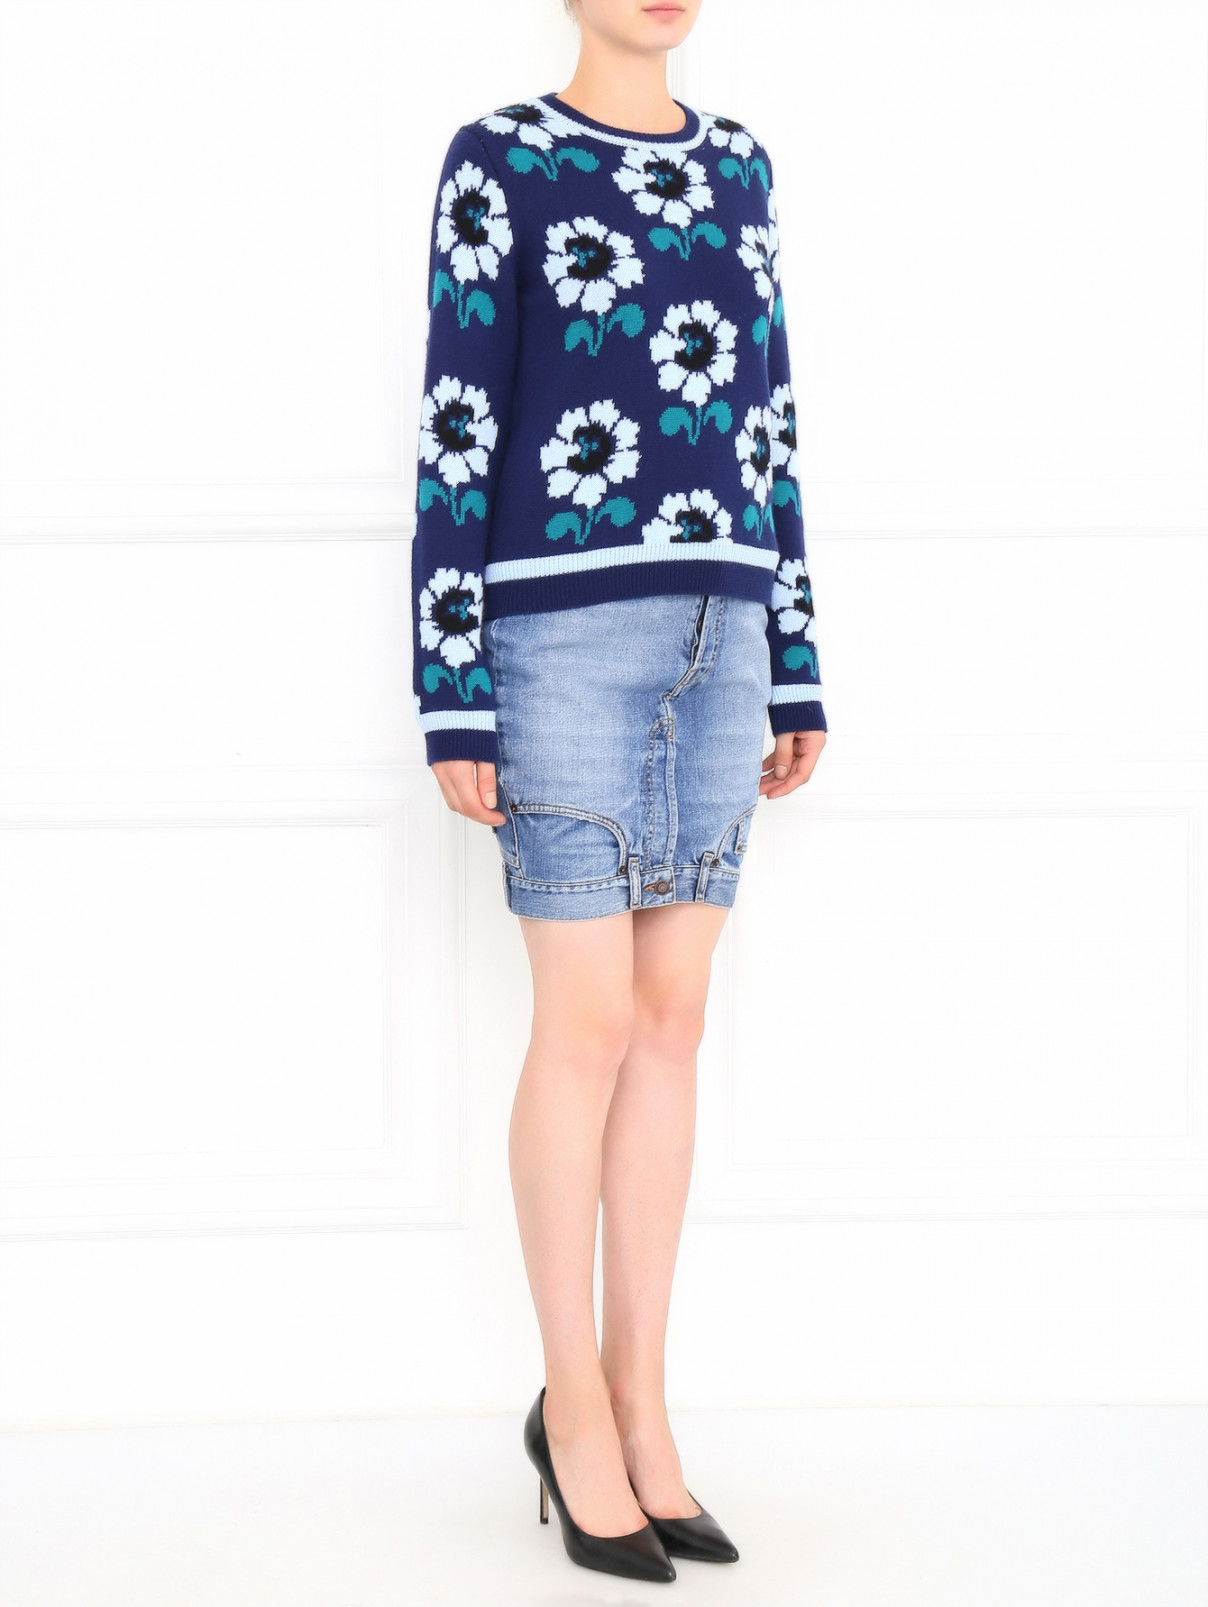 Джинсовая юбка-мини Moschino Couture  –  Модель Общий вид  – Цвет:  Синий